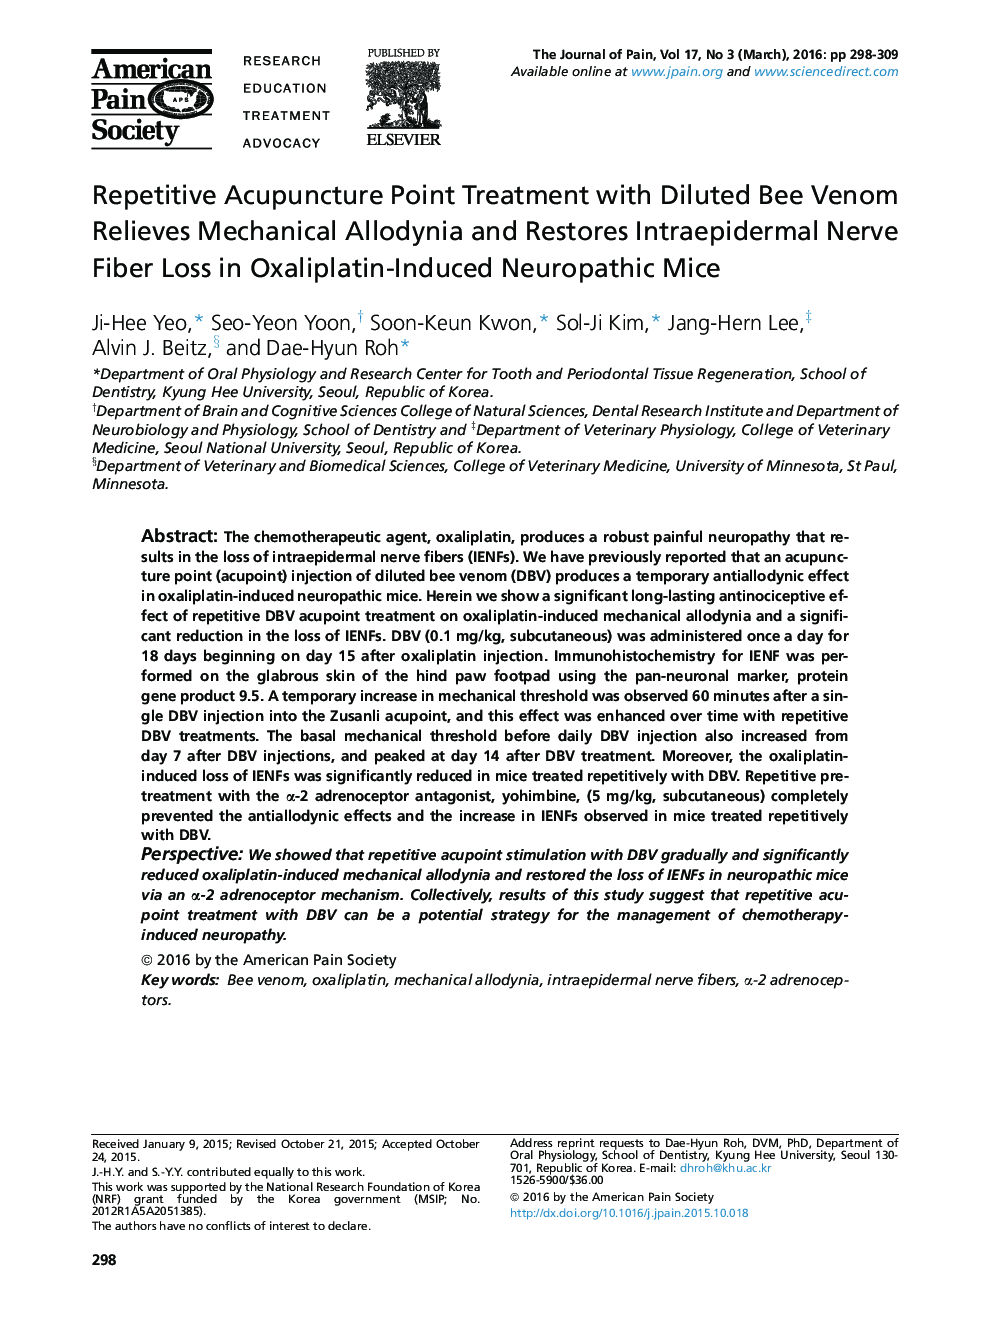 درمان طب سوزنی نقطه تکراری با زهر رقیق زنبور عسل آلوداینیا مکانیکی را تسکین می دهد و افت عصب فیبری Intraepidermal در موش نوروپاتیک ناشی از اگزالی پلاتین را بازیابی می کند